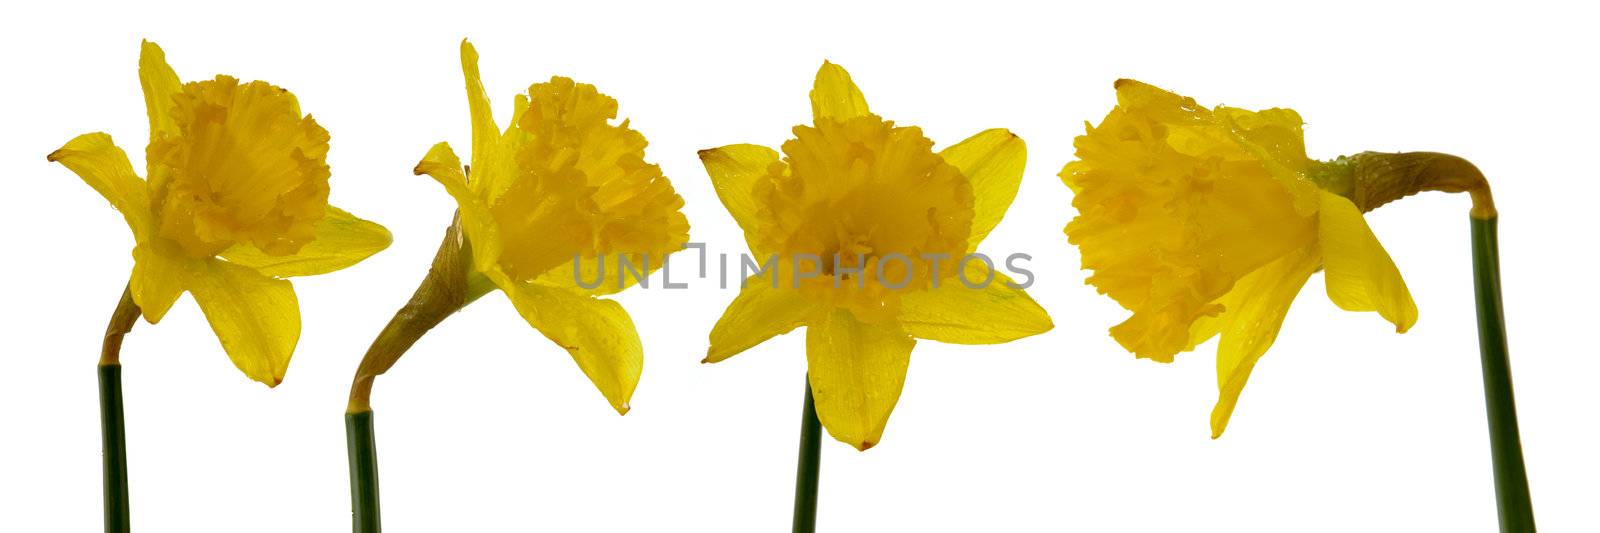 Daffodil by cfoto